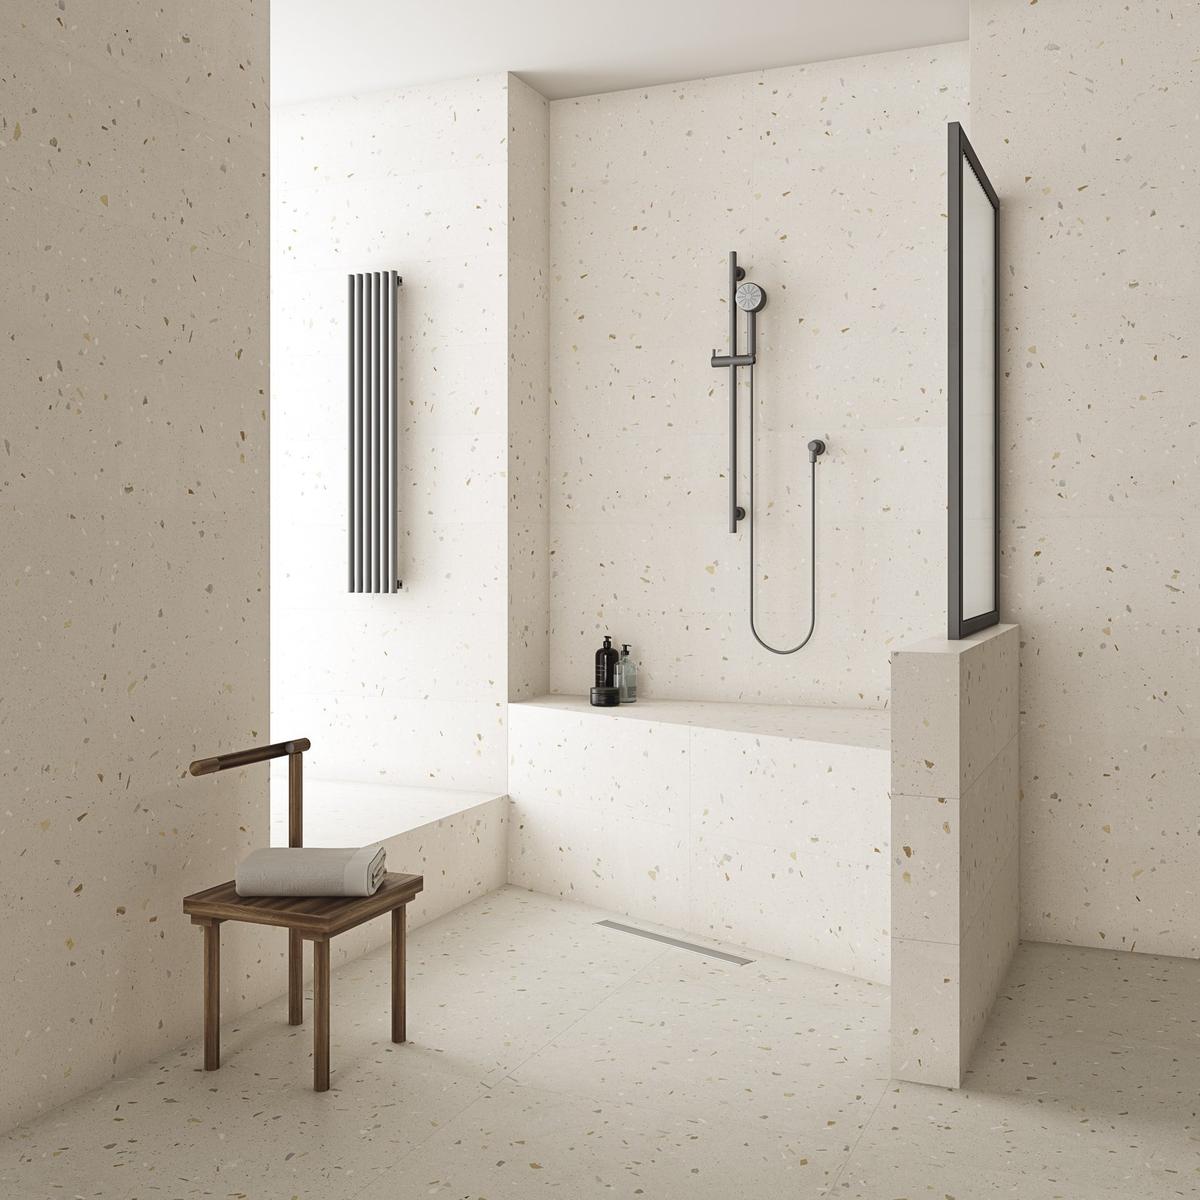 Terrazzo blanc parsemé nuances beige sur carrelage 60x120 cm dans une salle de bain tons neutres avec douche moderne et accessoires en métal